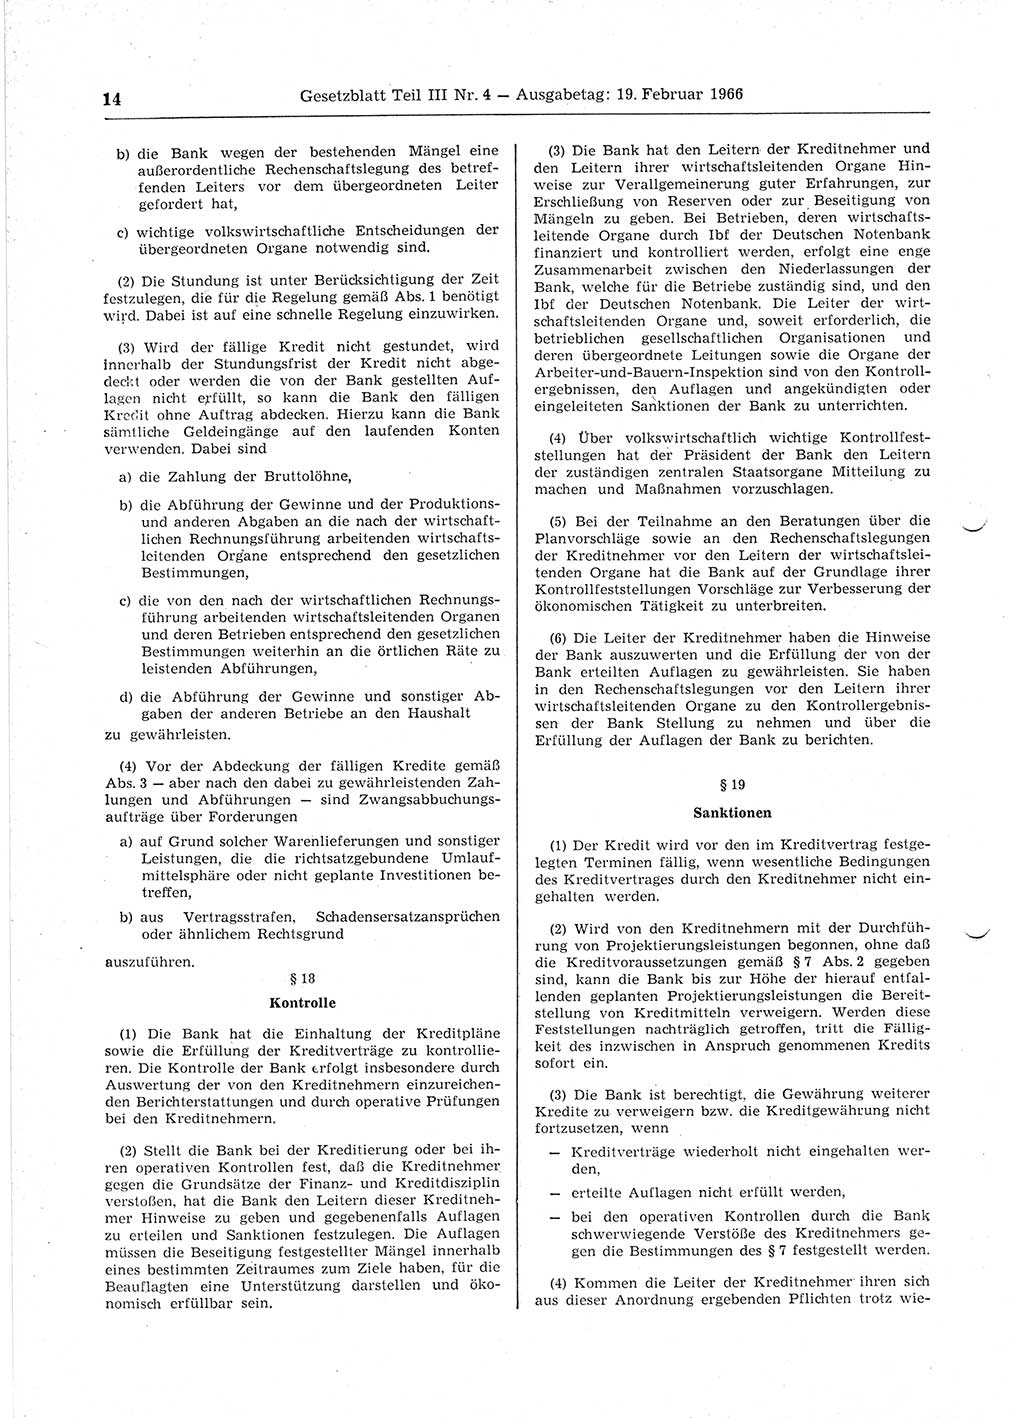 Gesetzblatt (GBl.) der Deutschen Demokratischen Republik (DDR) Teil ⅠⅠⅠ 1966, Seite 14 (GBl. DDR ⅠⅠⅠ 1966, S. 14)